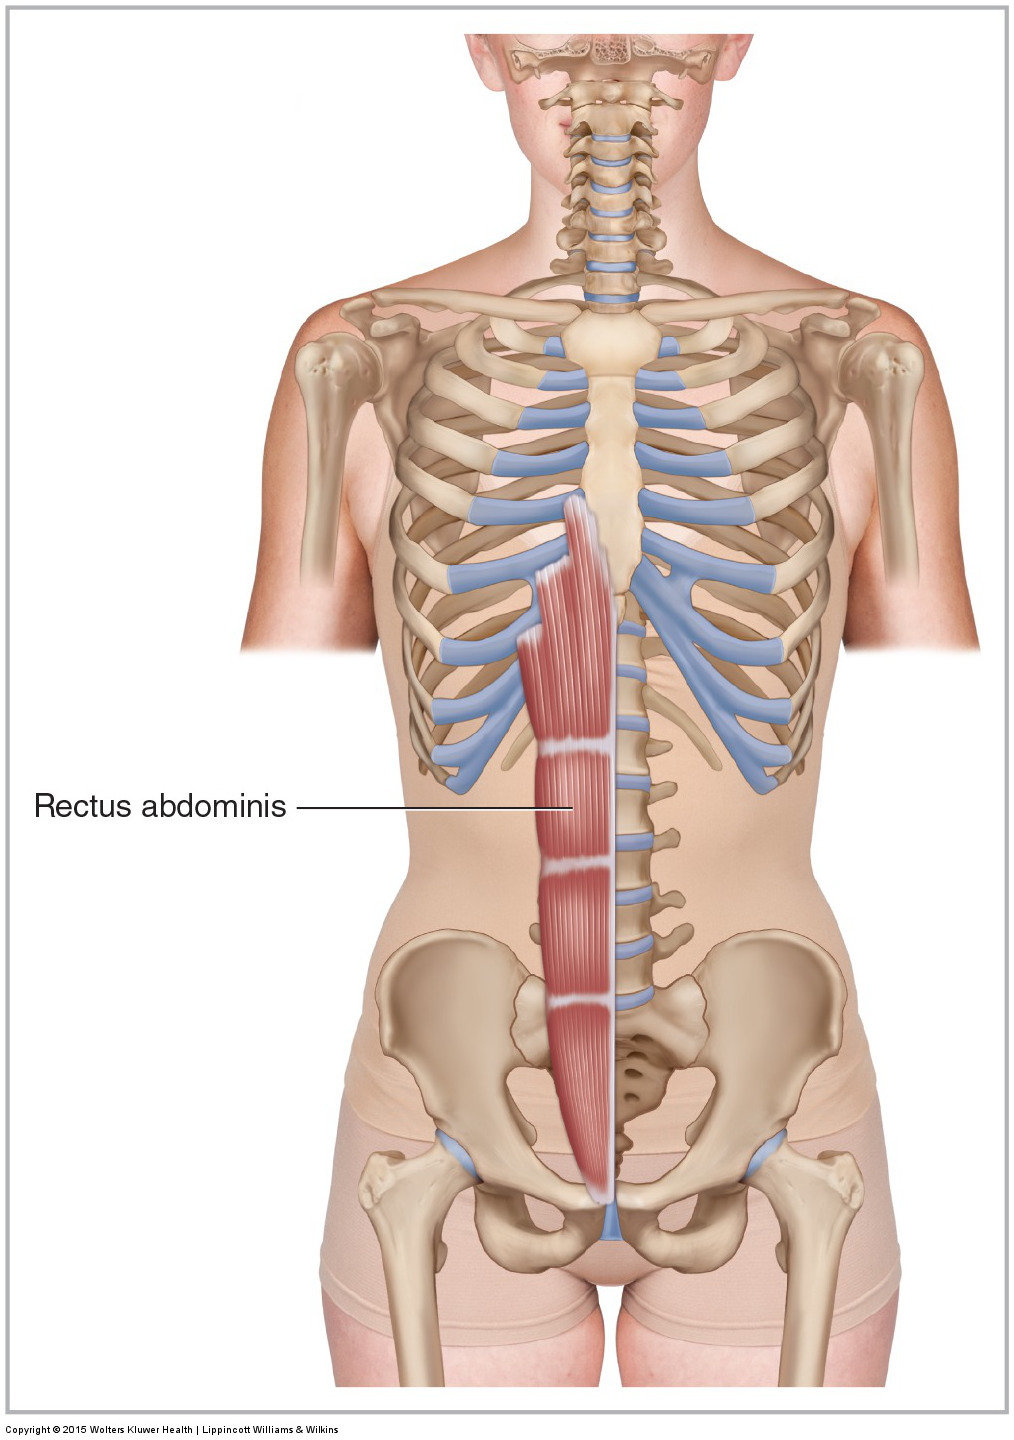 Anterior view of the rectus abdominis